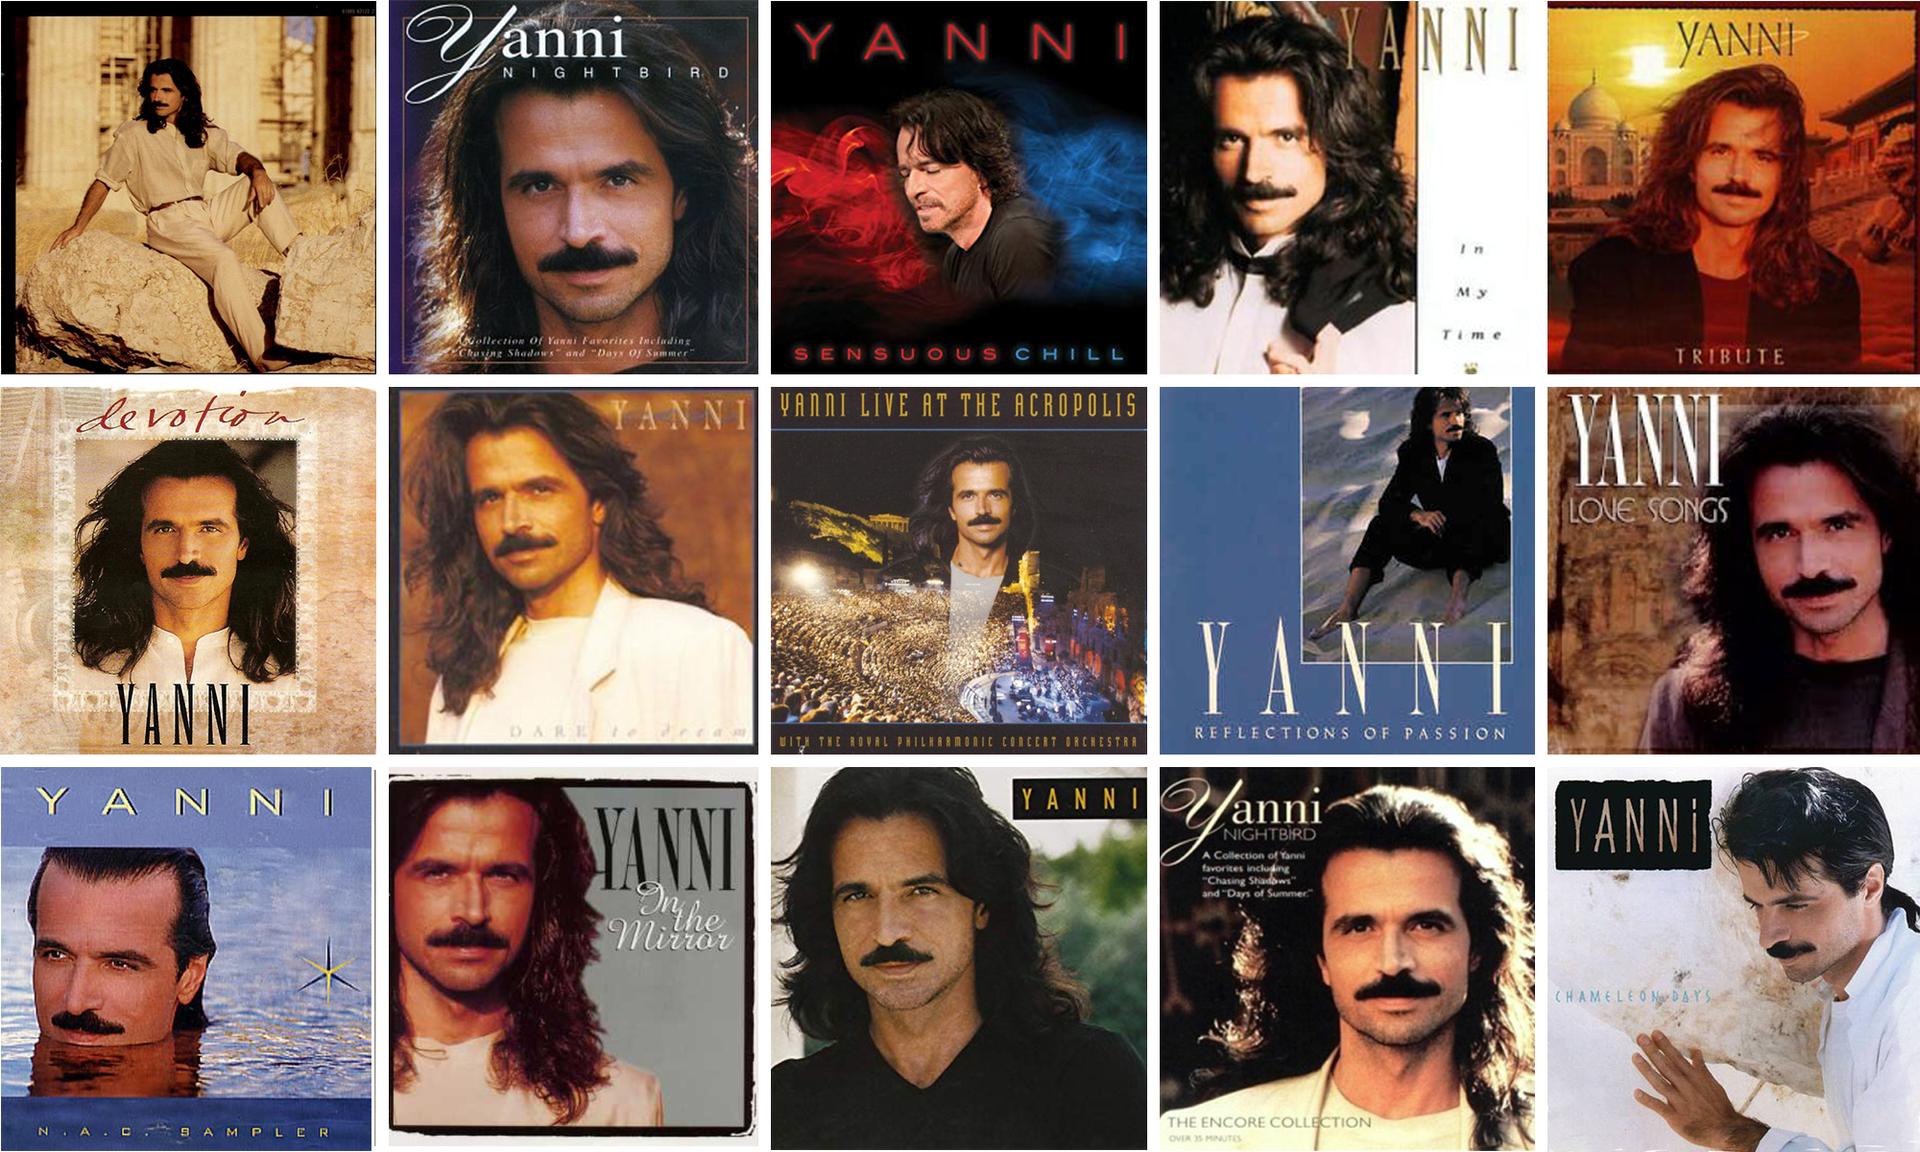 Yanni, the Greek god of sweeping, symphonic ‘90s music.